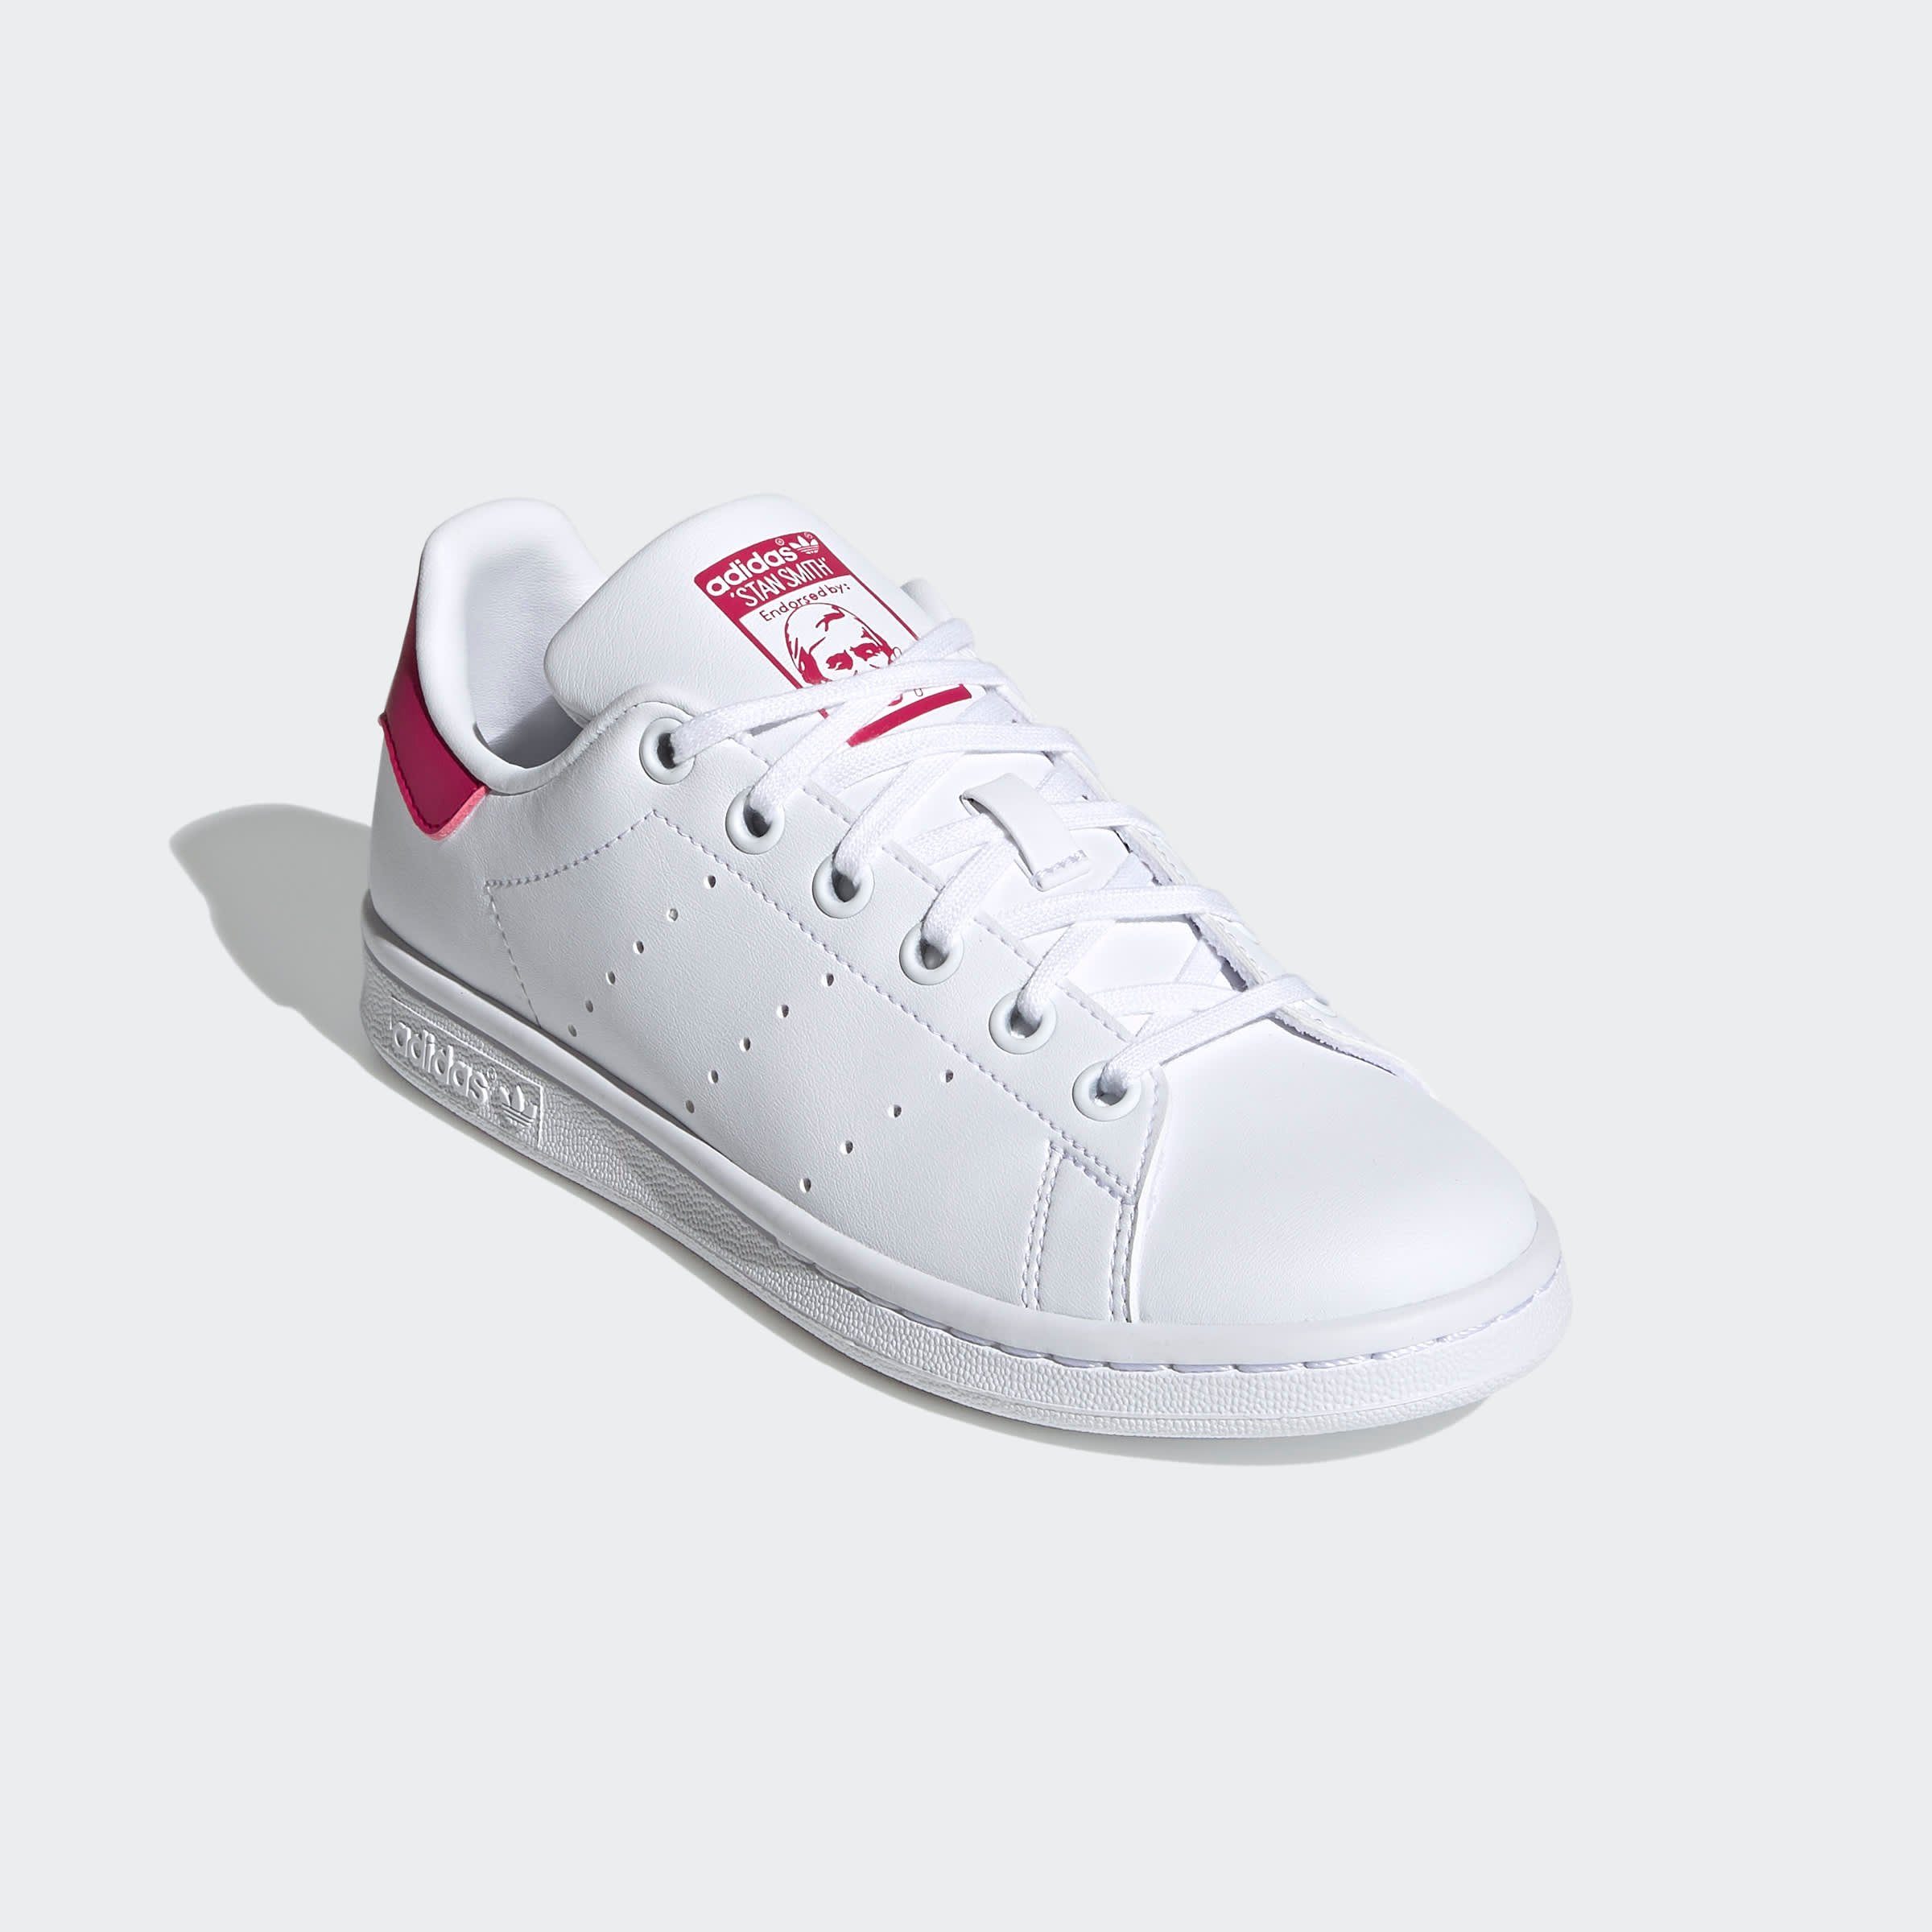 adidas Originals »STAN SMITH« Sneaker kaufen | OTTO